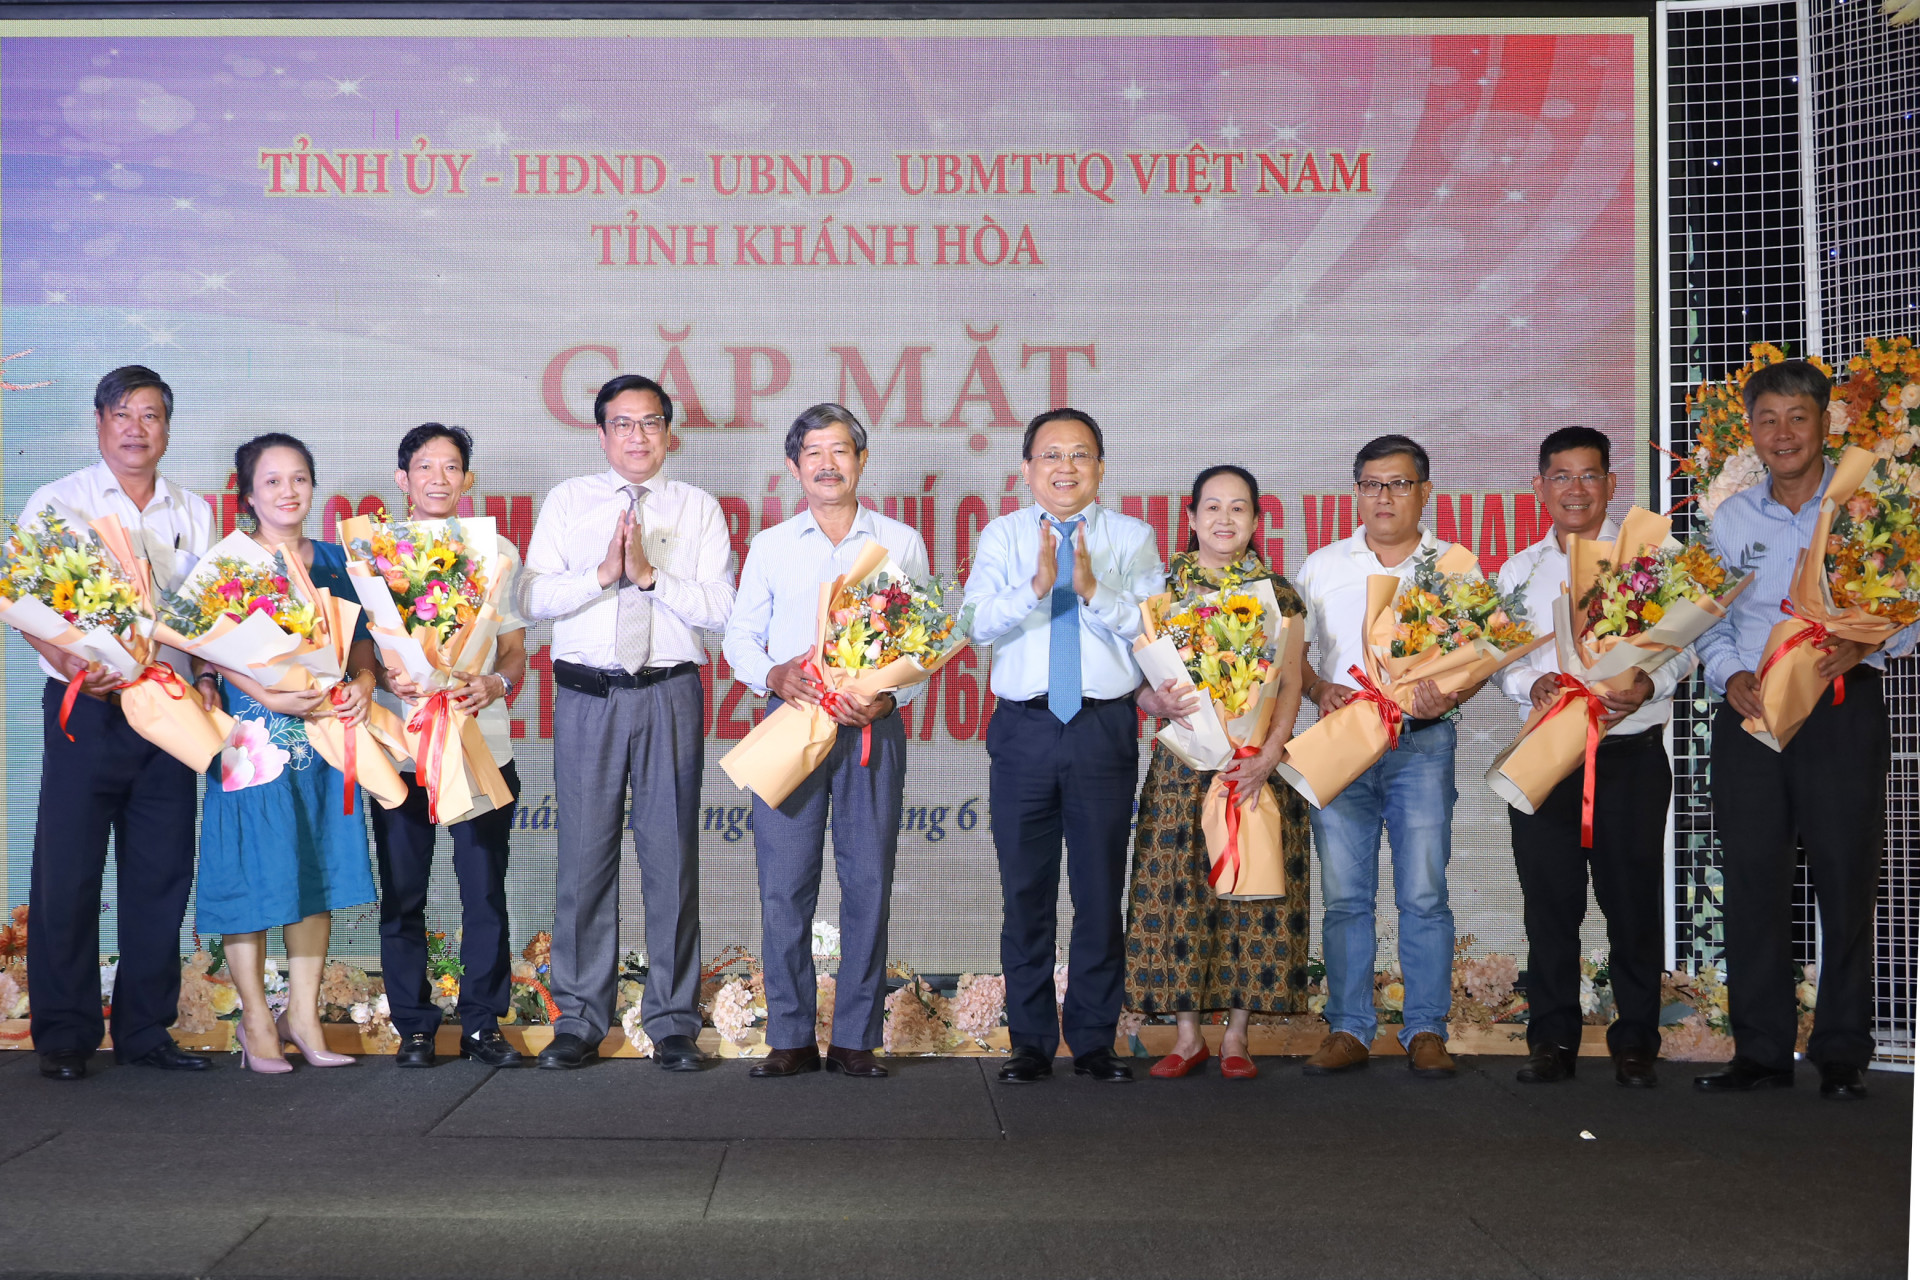 Đồng chí Lê Hữu Hoàng và đồng chí Lê Hữu Thọ tặng hoa chúc mừng đại diện các cơ quan báo chí.